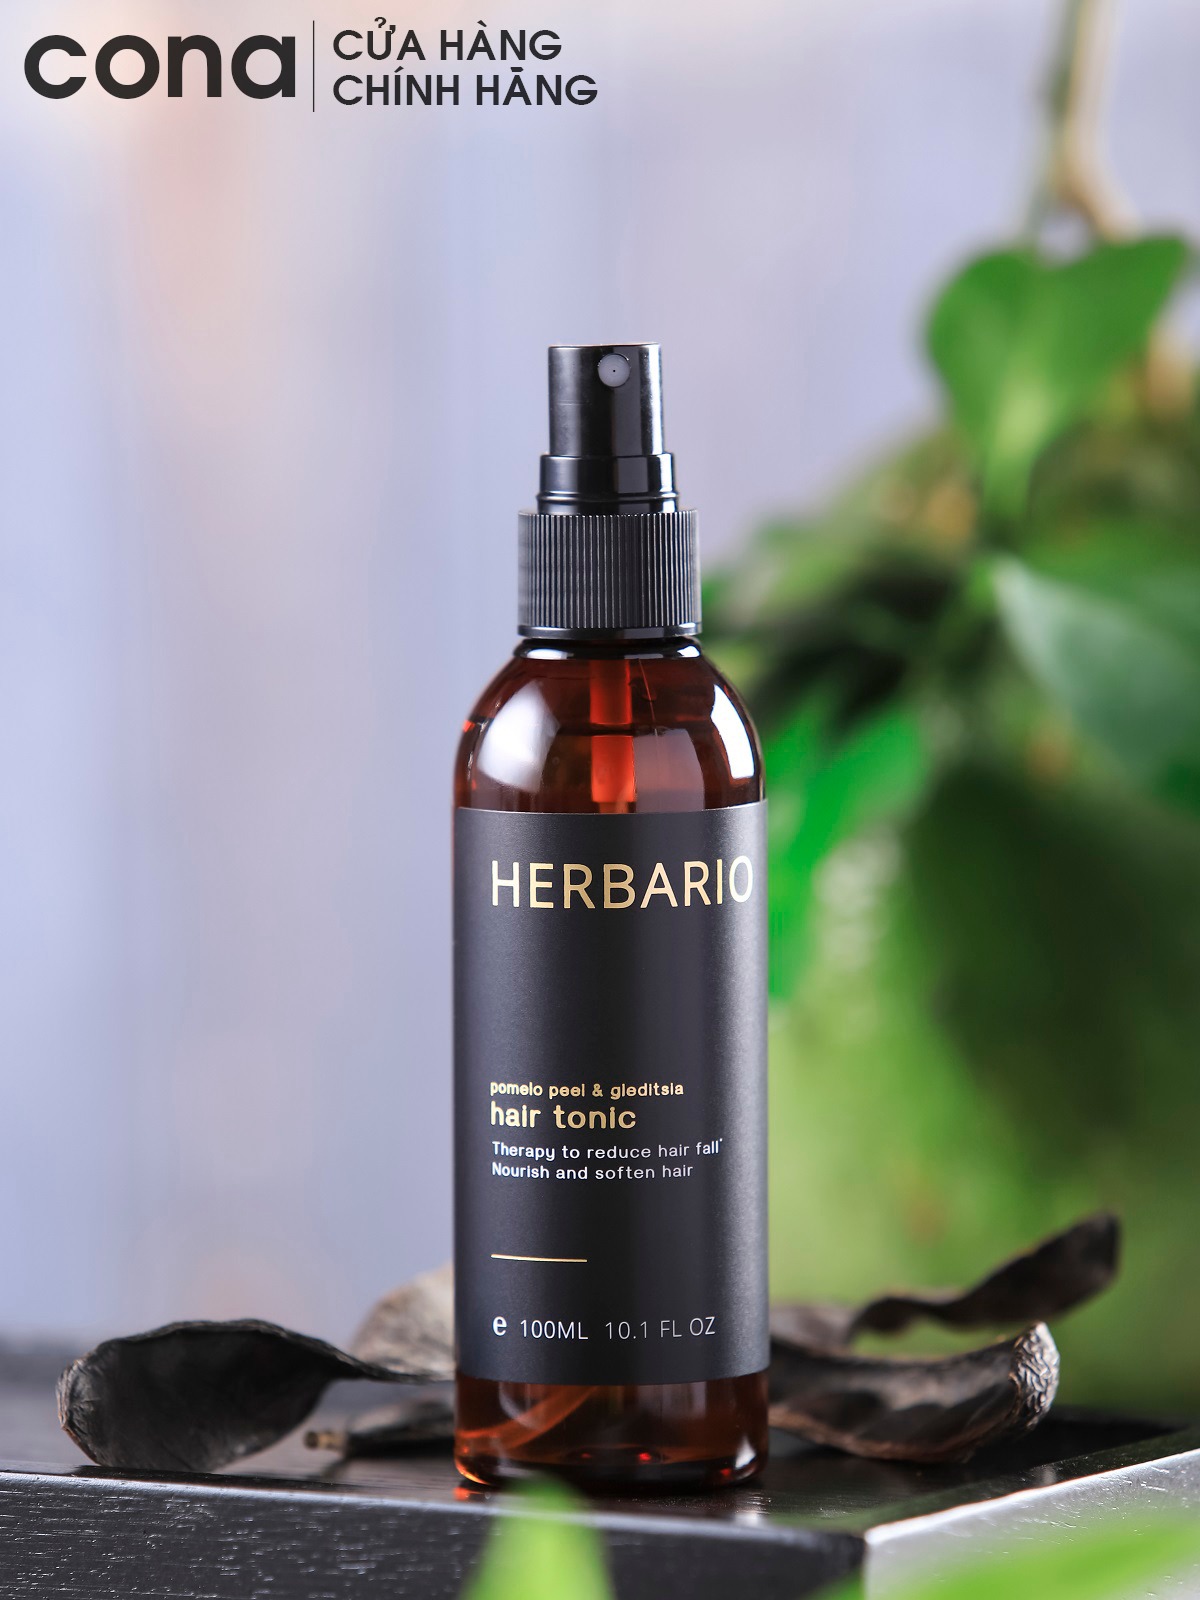 Nước xịt dưỡng tóc tinh dầu bưởi Herbario giúp dài tóc, mọc tóc nhanh nhơn